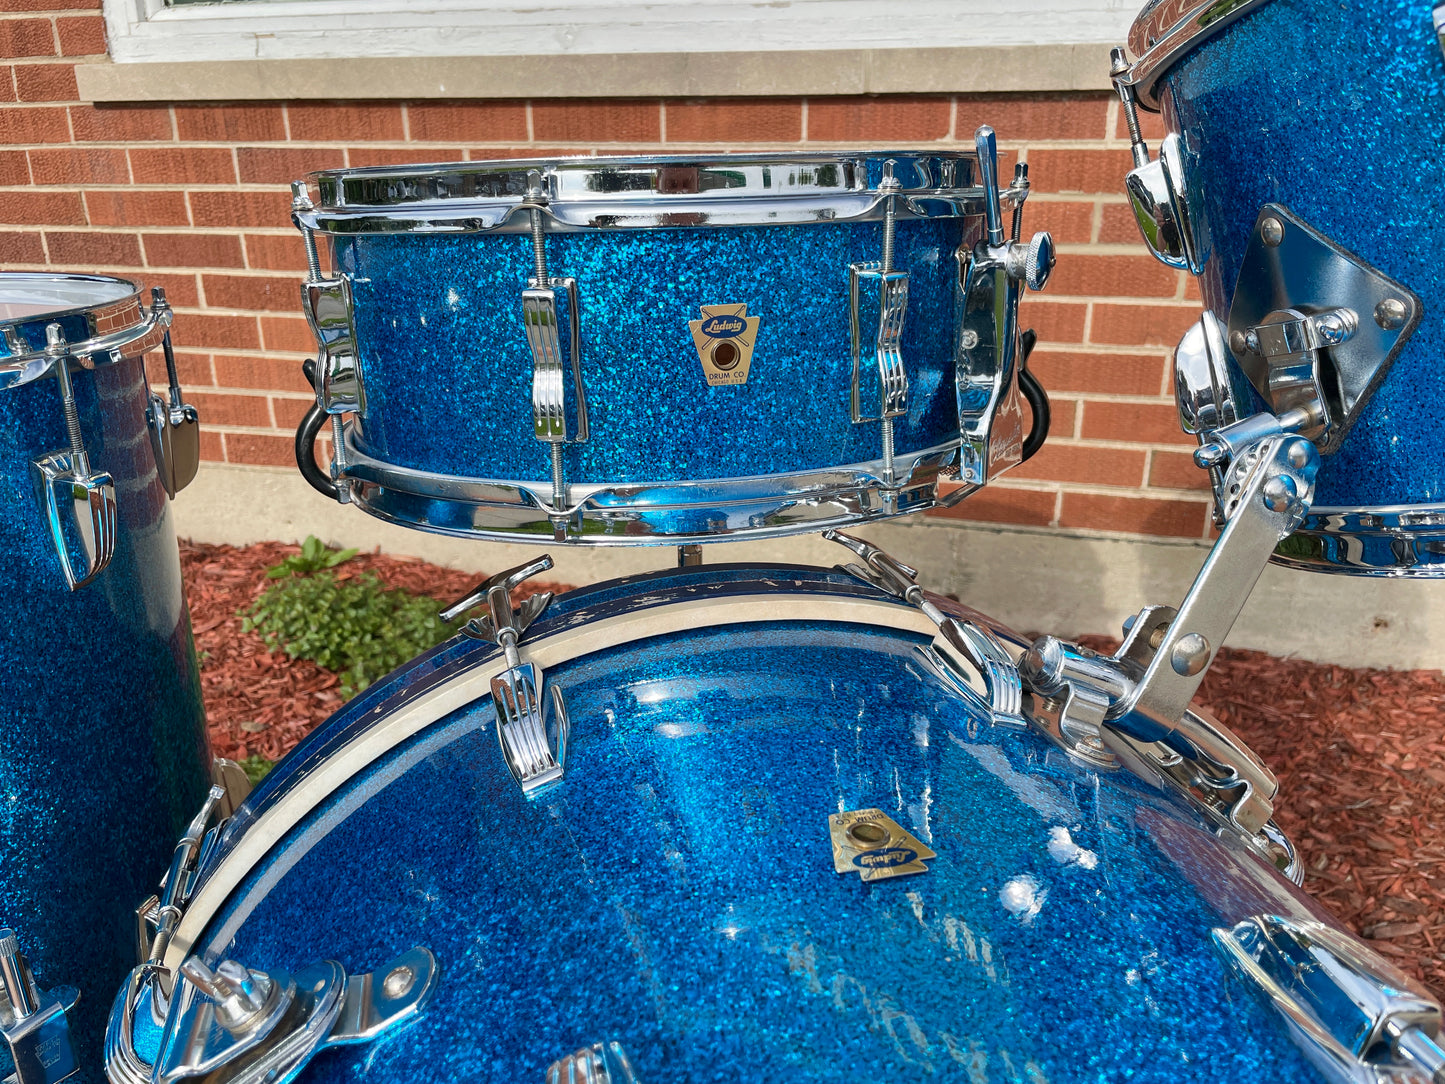 1959 Ludwig Super Classic Drum Set Blue Sparkle 22/13/16/5.5x14